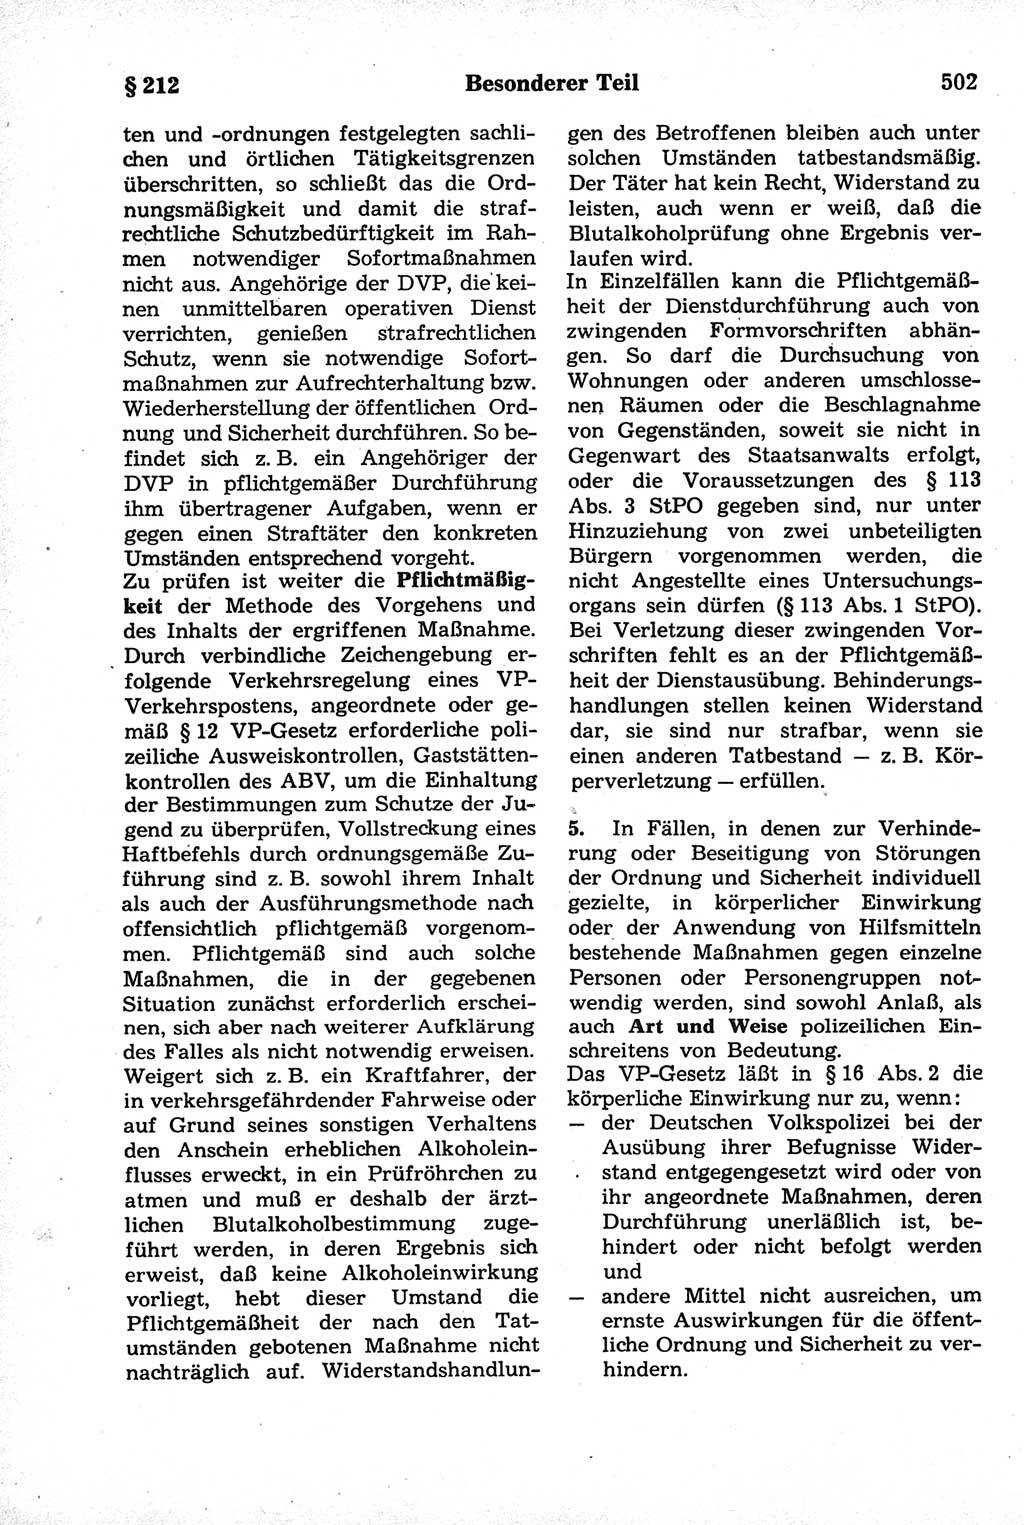 Strafrecht der Deutschen Demokratischen Republik (DDR), Kommentar zum Strafgesetzbuch (StGB) 1981, Seite 502 (Strafr. DDR Komm. StGB 1981, S. 502)